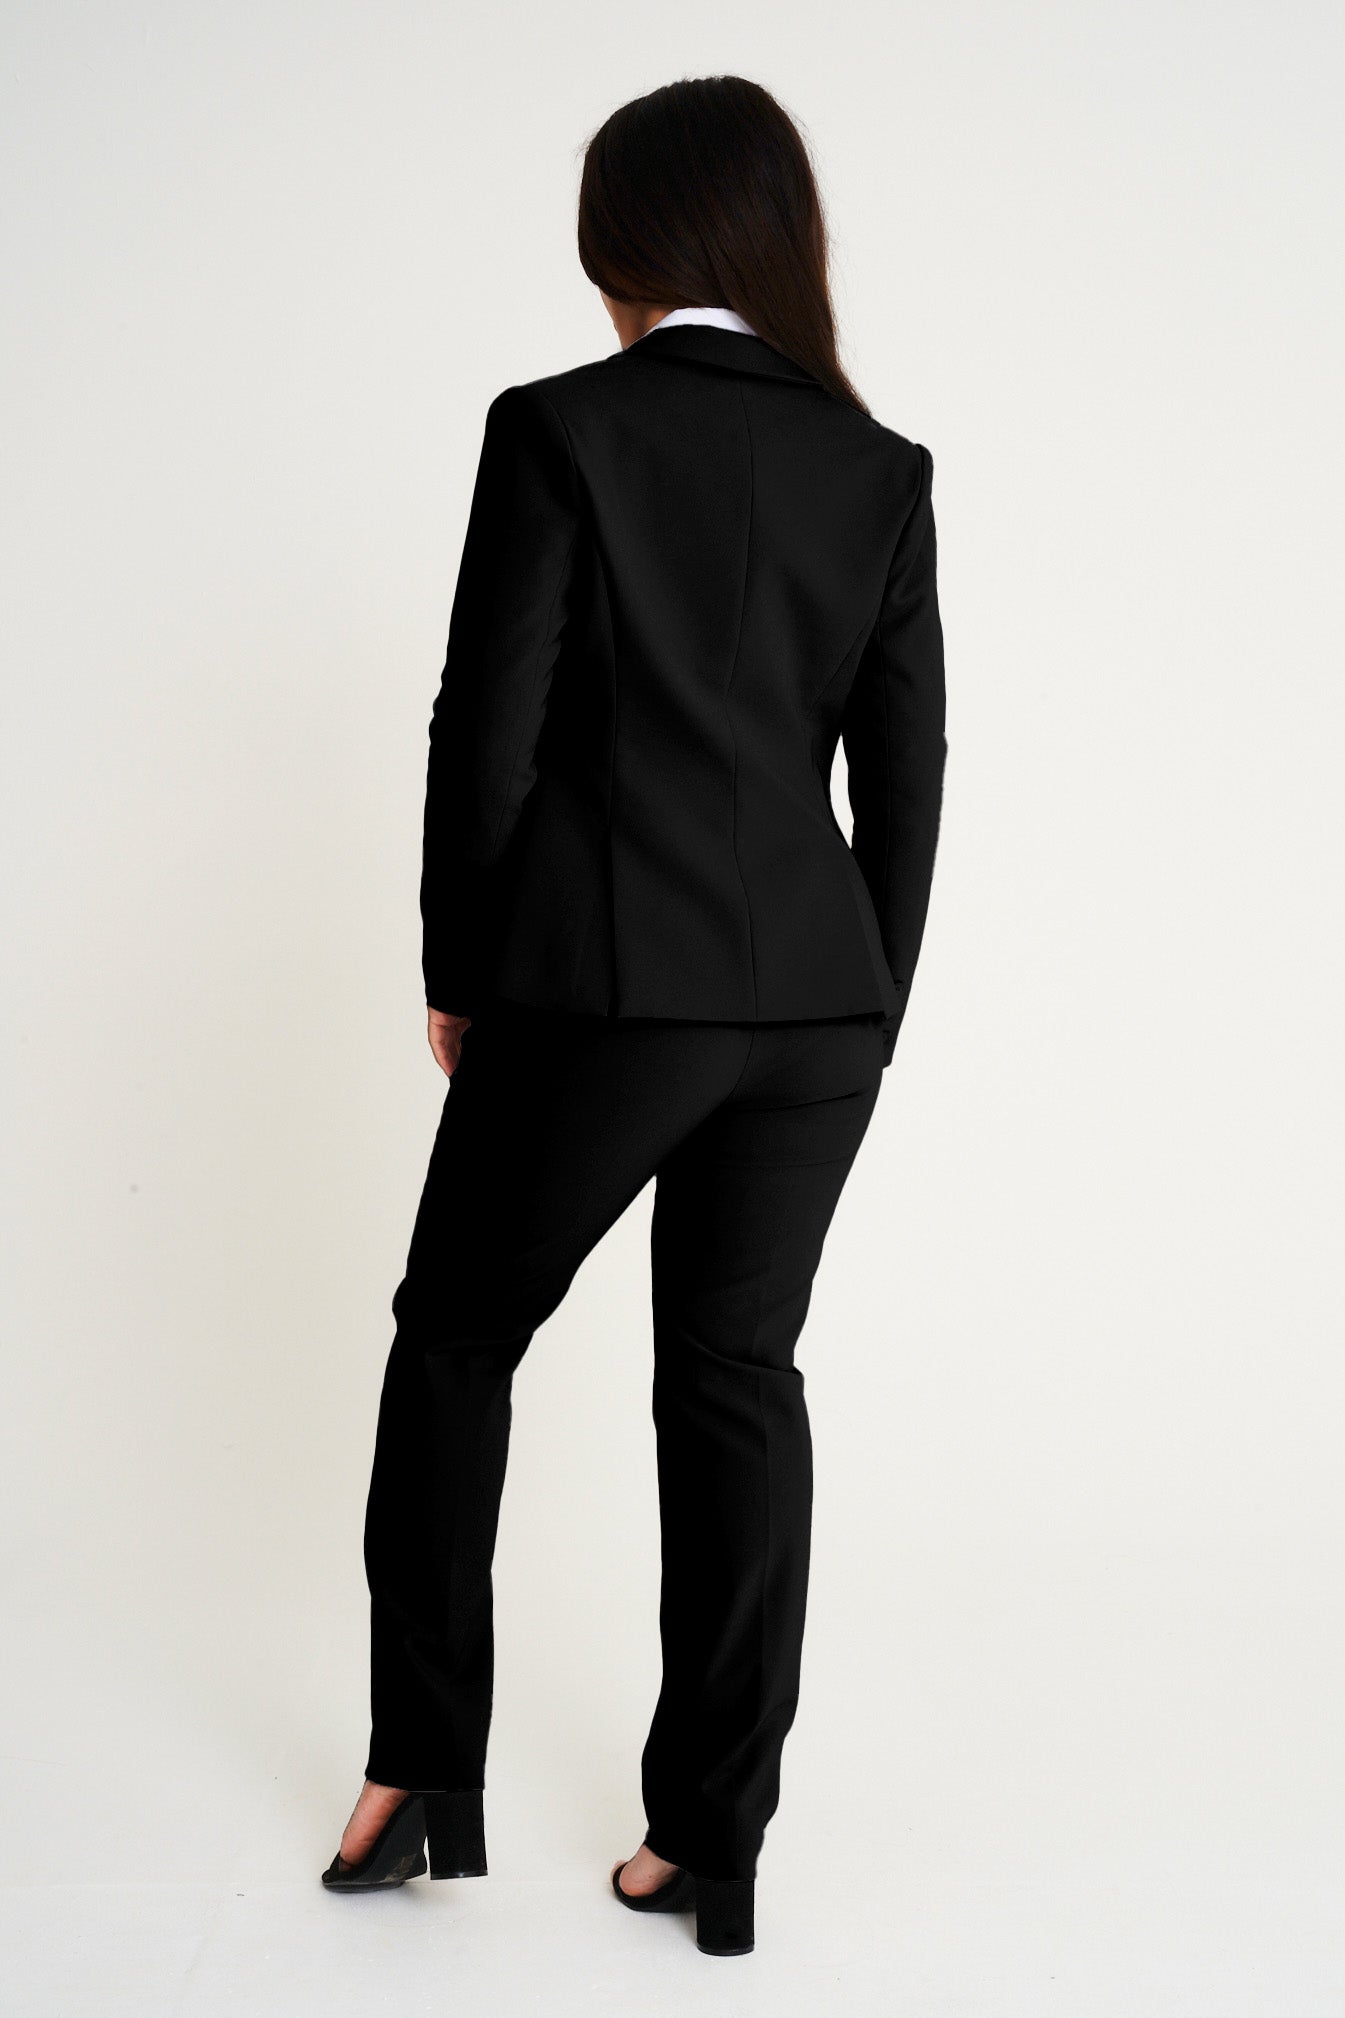 The Milan suit jacket black